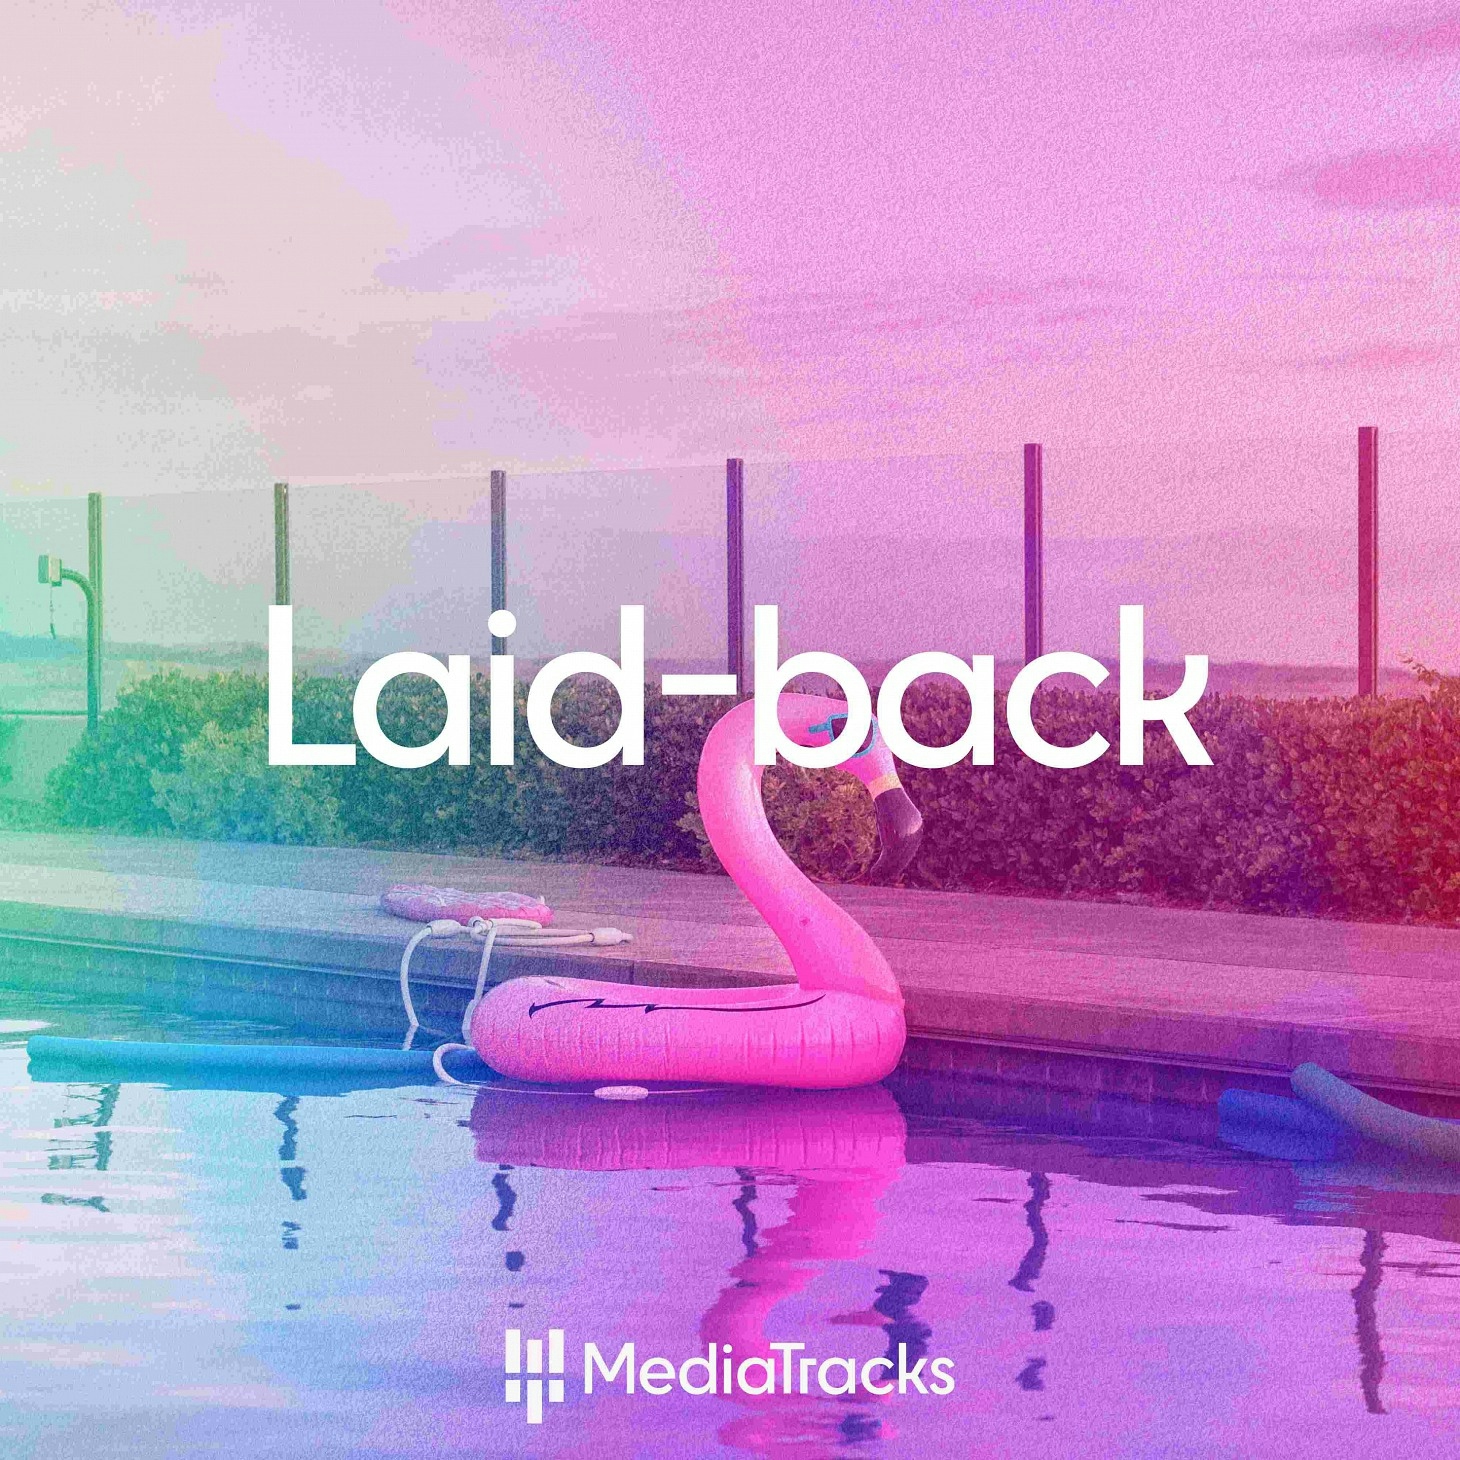 Laid-back